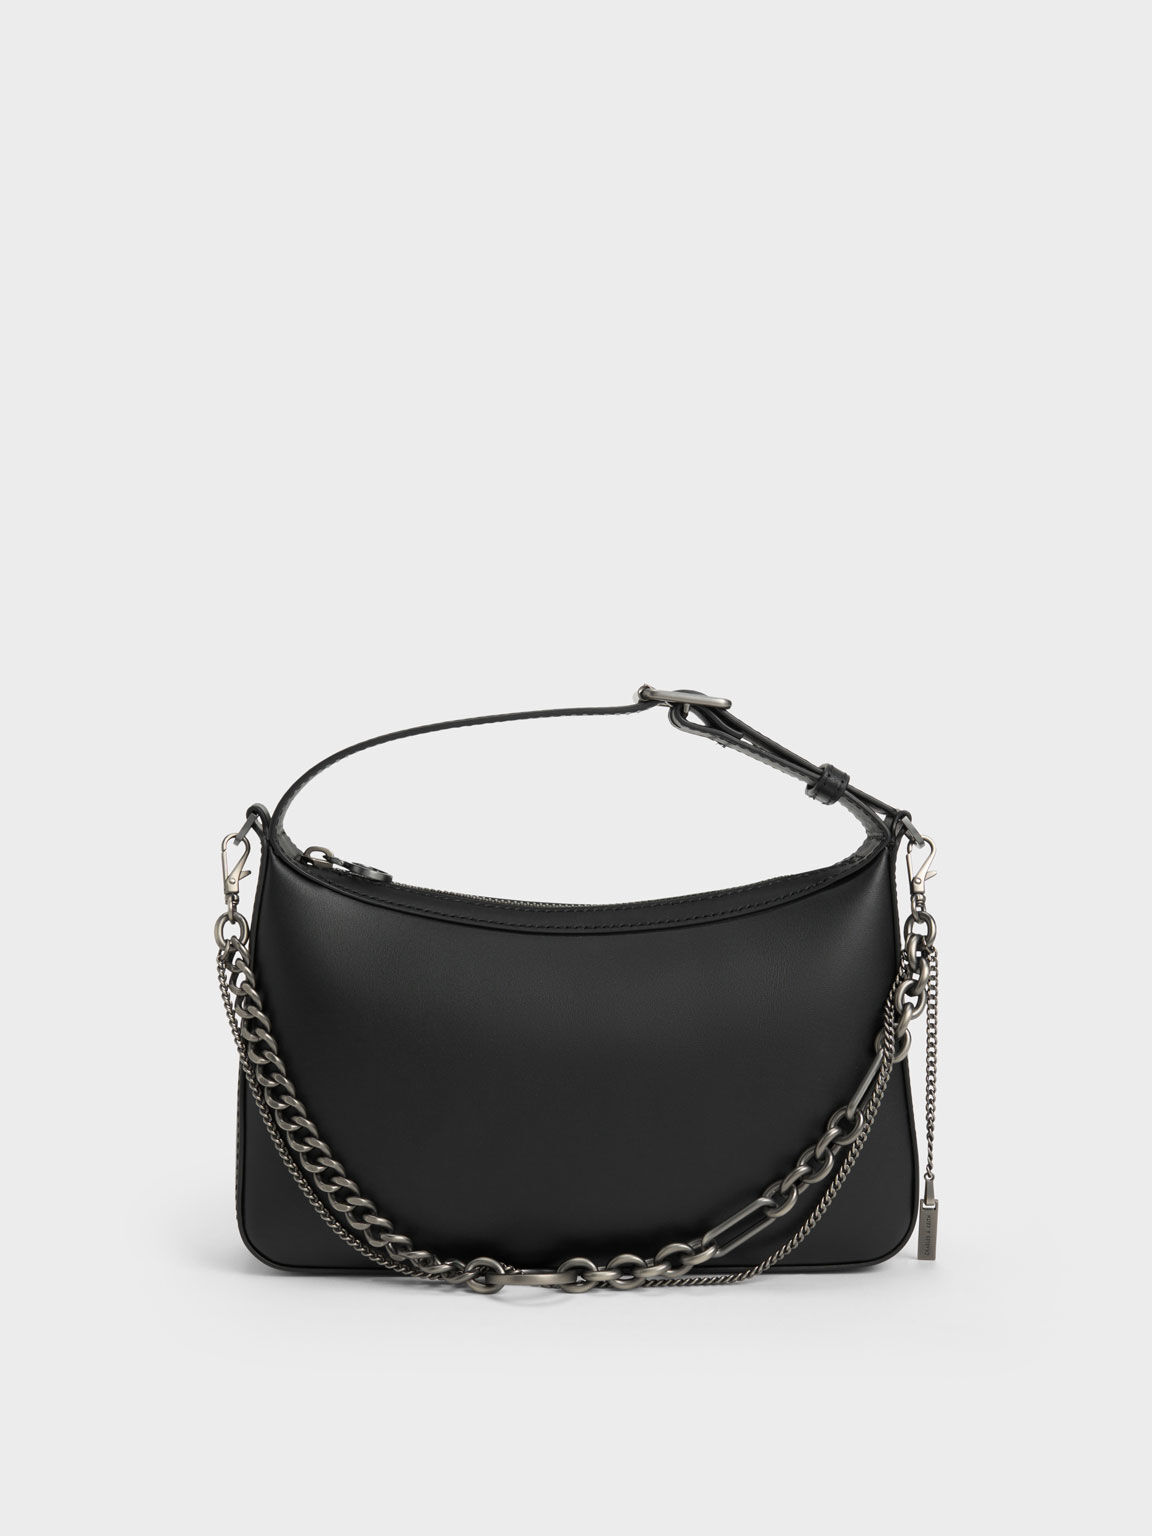 Jules Leather Chain-Embellished Bag, Black, hi-res